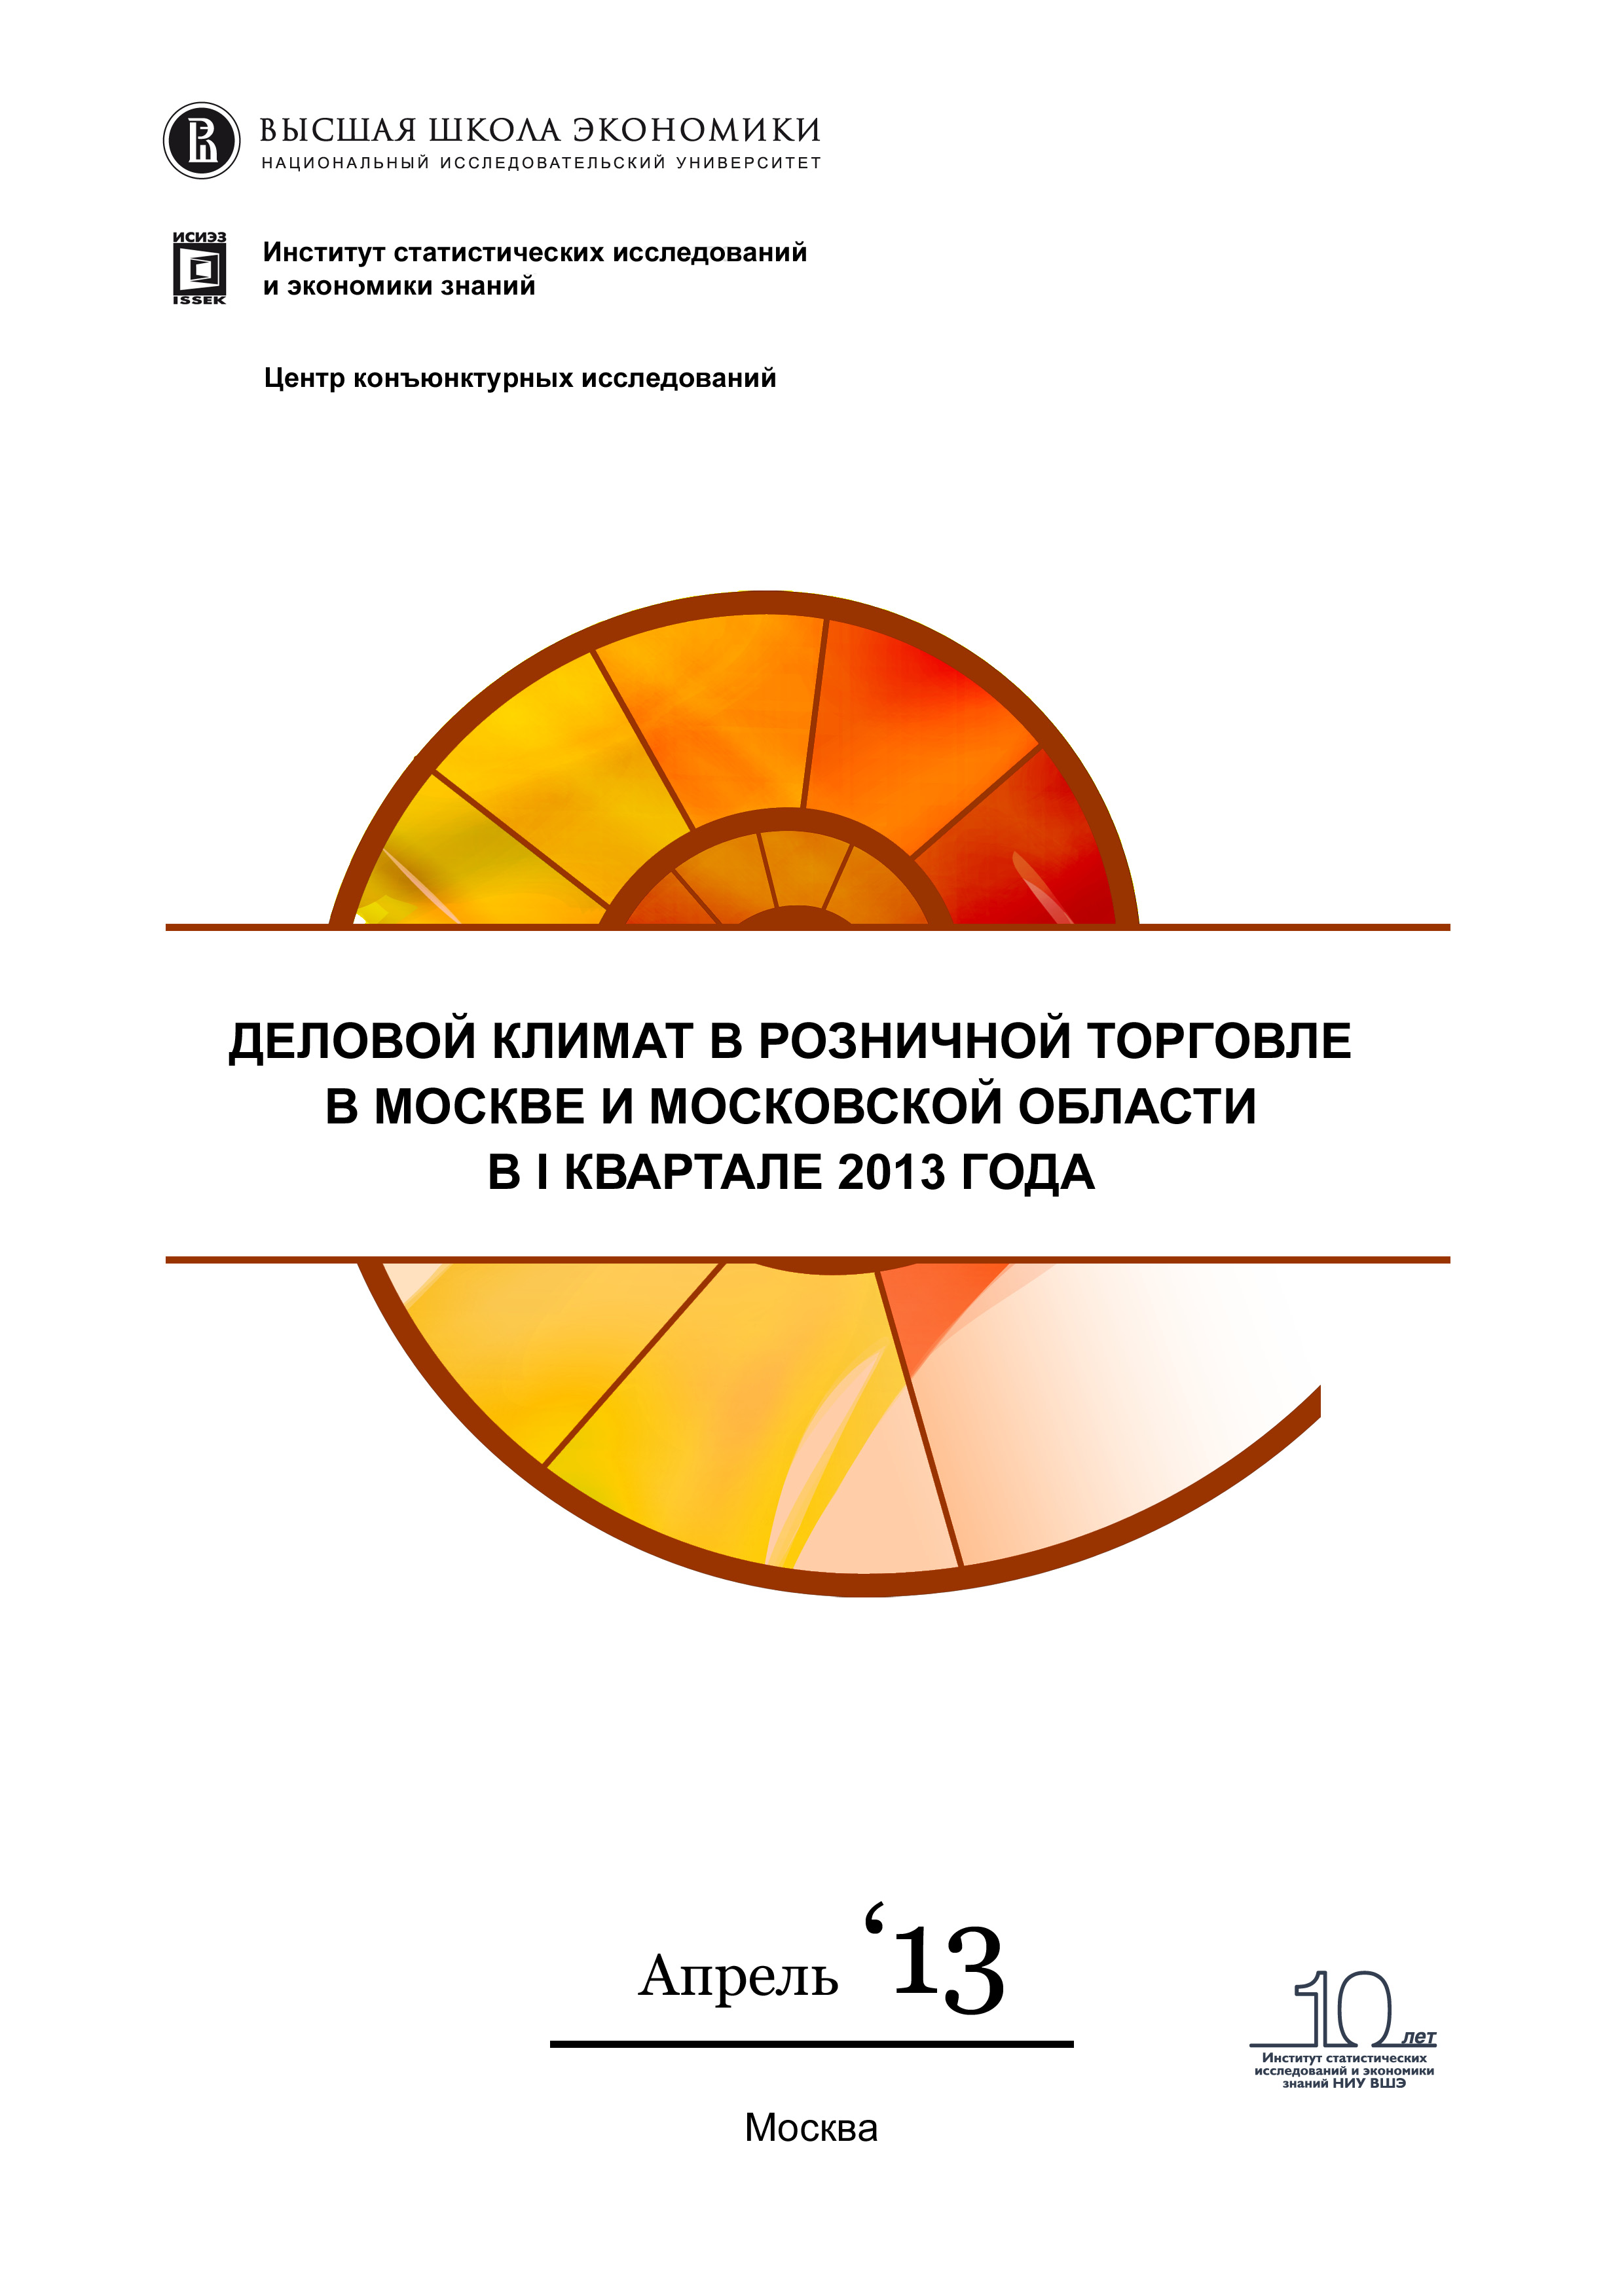 Деловой климат в розничной торговле в Москве и Московской области в I квартале 2013 года